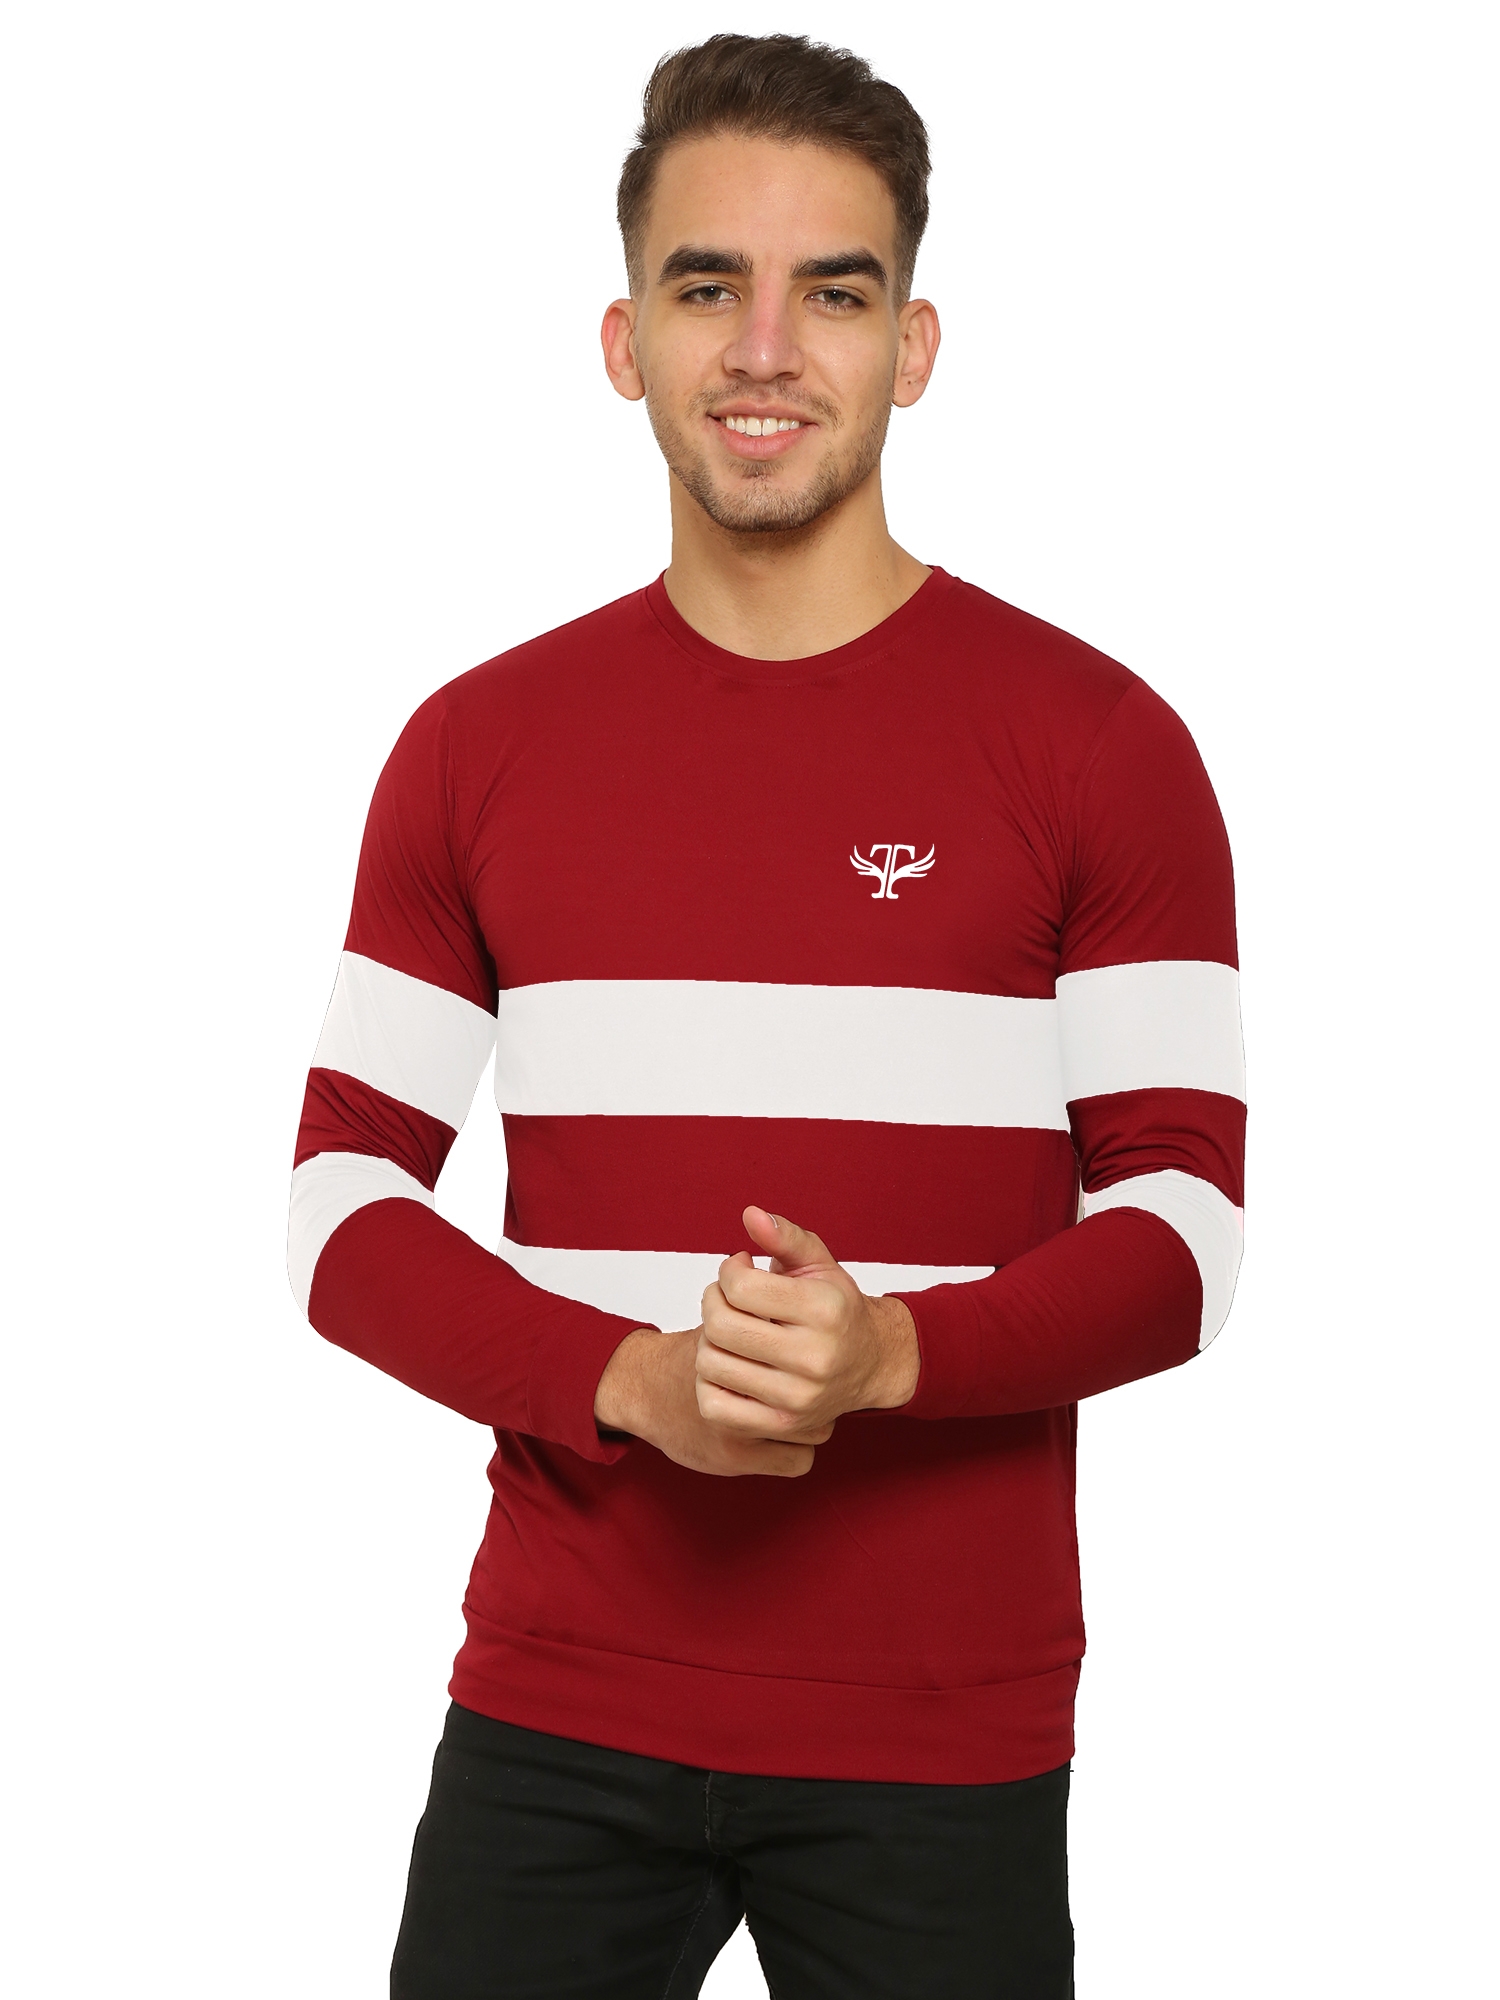 HEATHEX | Men's Chest Panel Regular Full Sleeve Fit Red T-Shirt 0